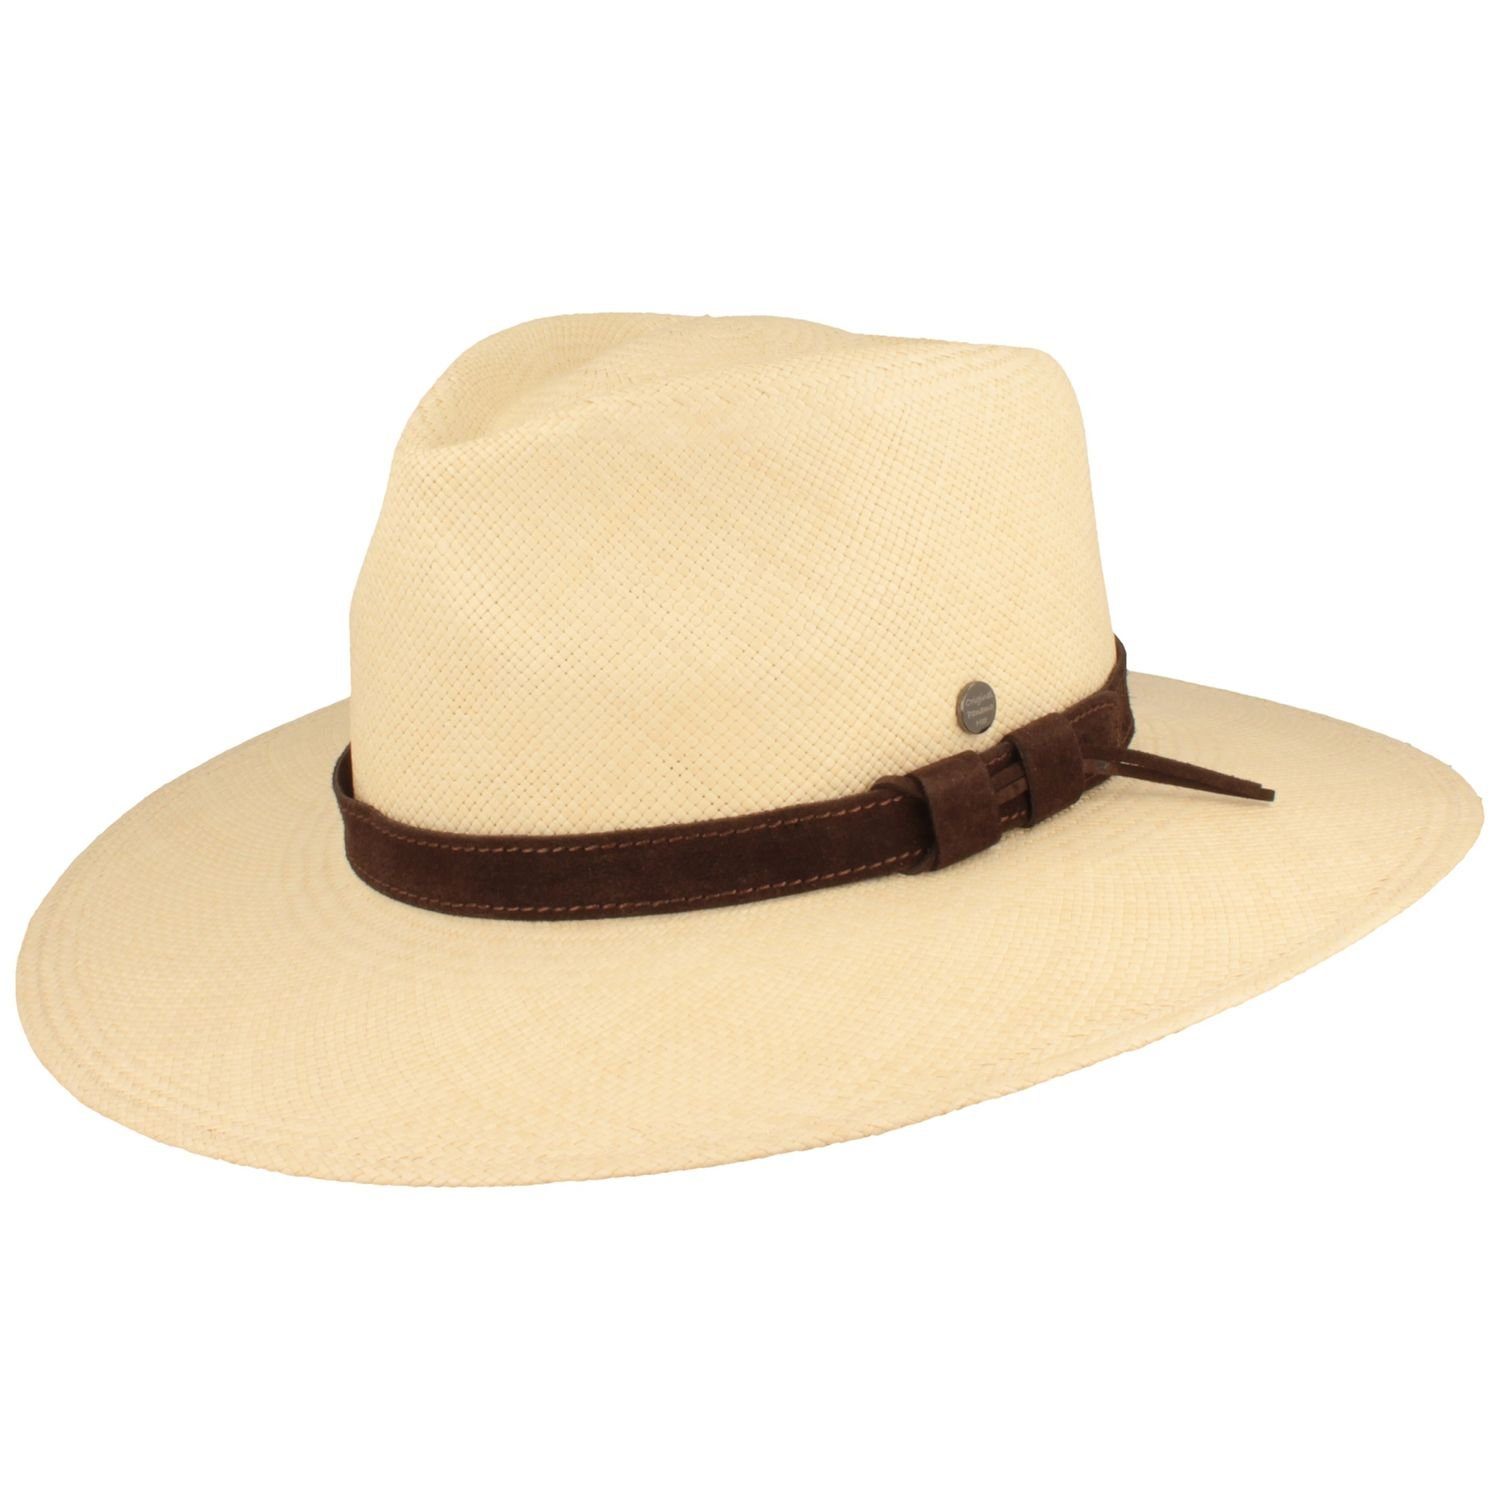 Breiter Strohhut Panama Hut mit Leder-Garnitur und UV-Schutz 50+